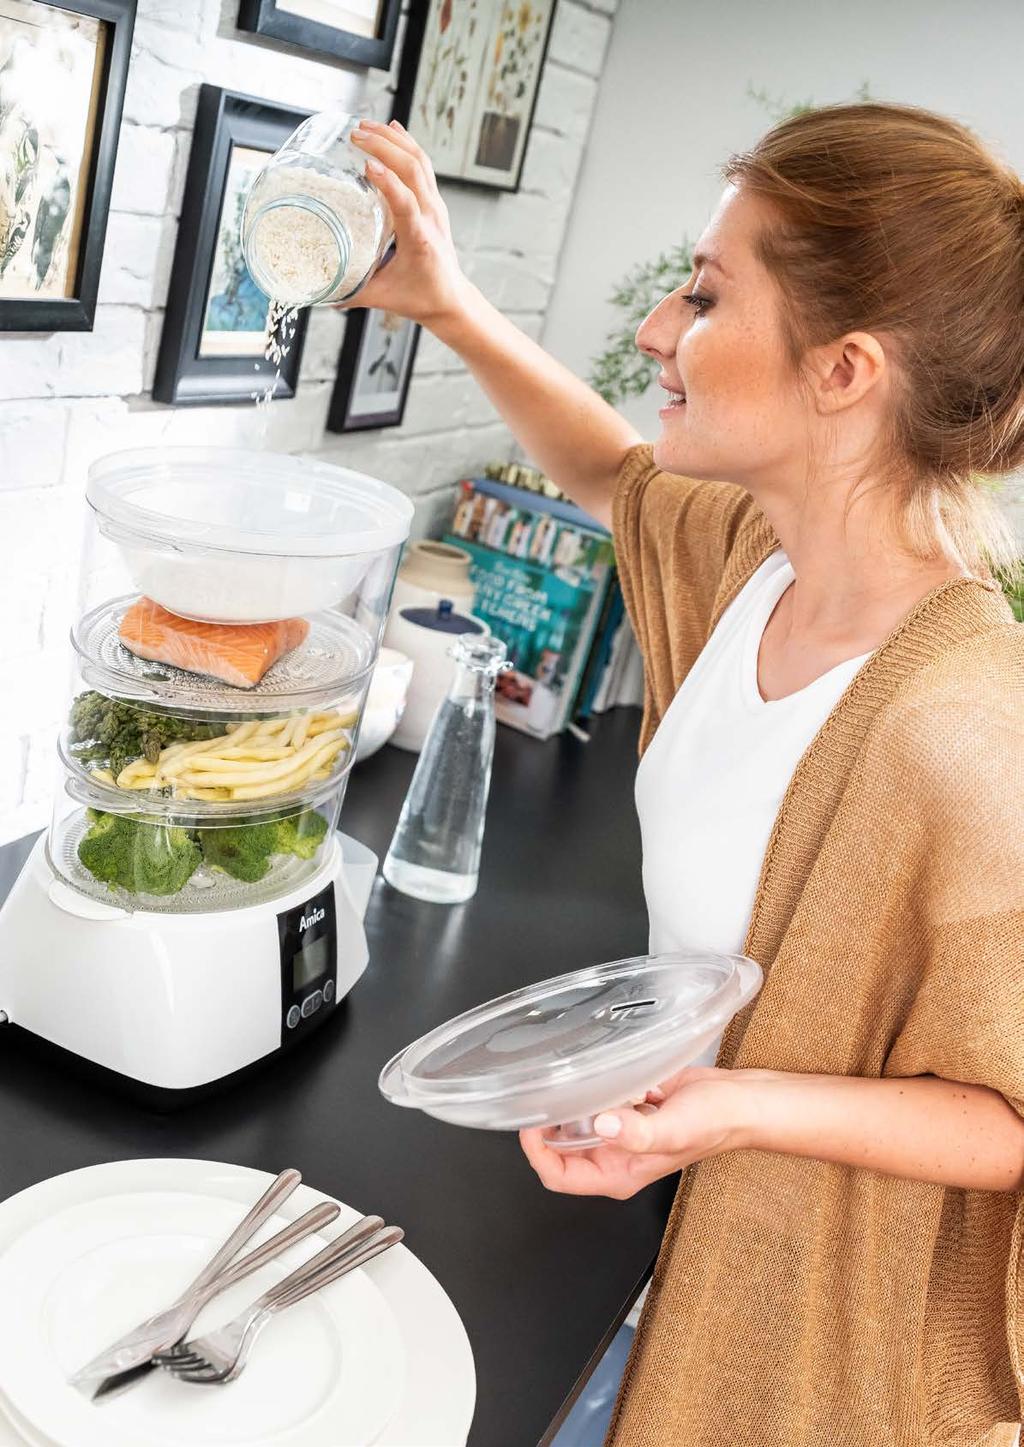 Parowary Parowar pozwoli Ci przygotować zdrowy posiłek bez utraty wartości odżywczych zawartych w produktach. Dzięki robotom kuchennym praca w kuchni stanie się łatwa i przyjemna.